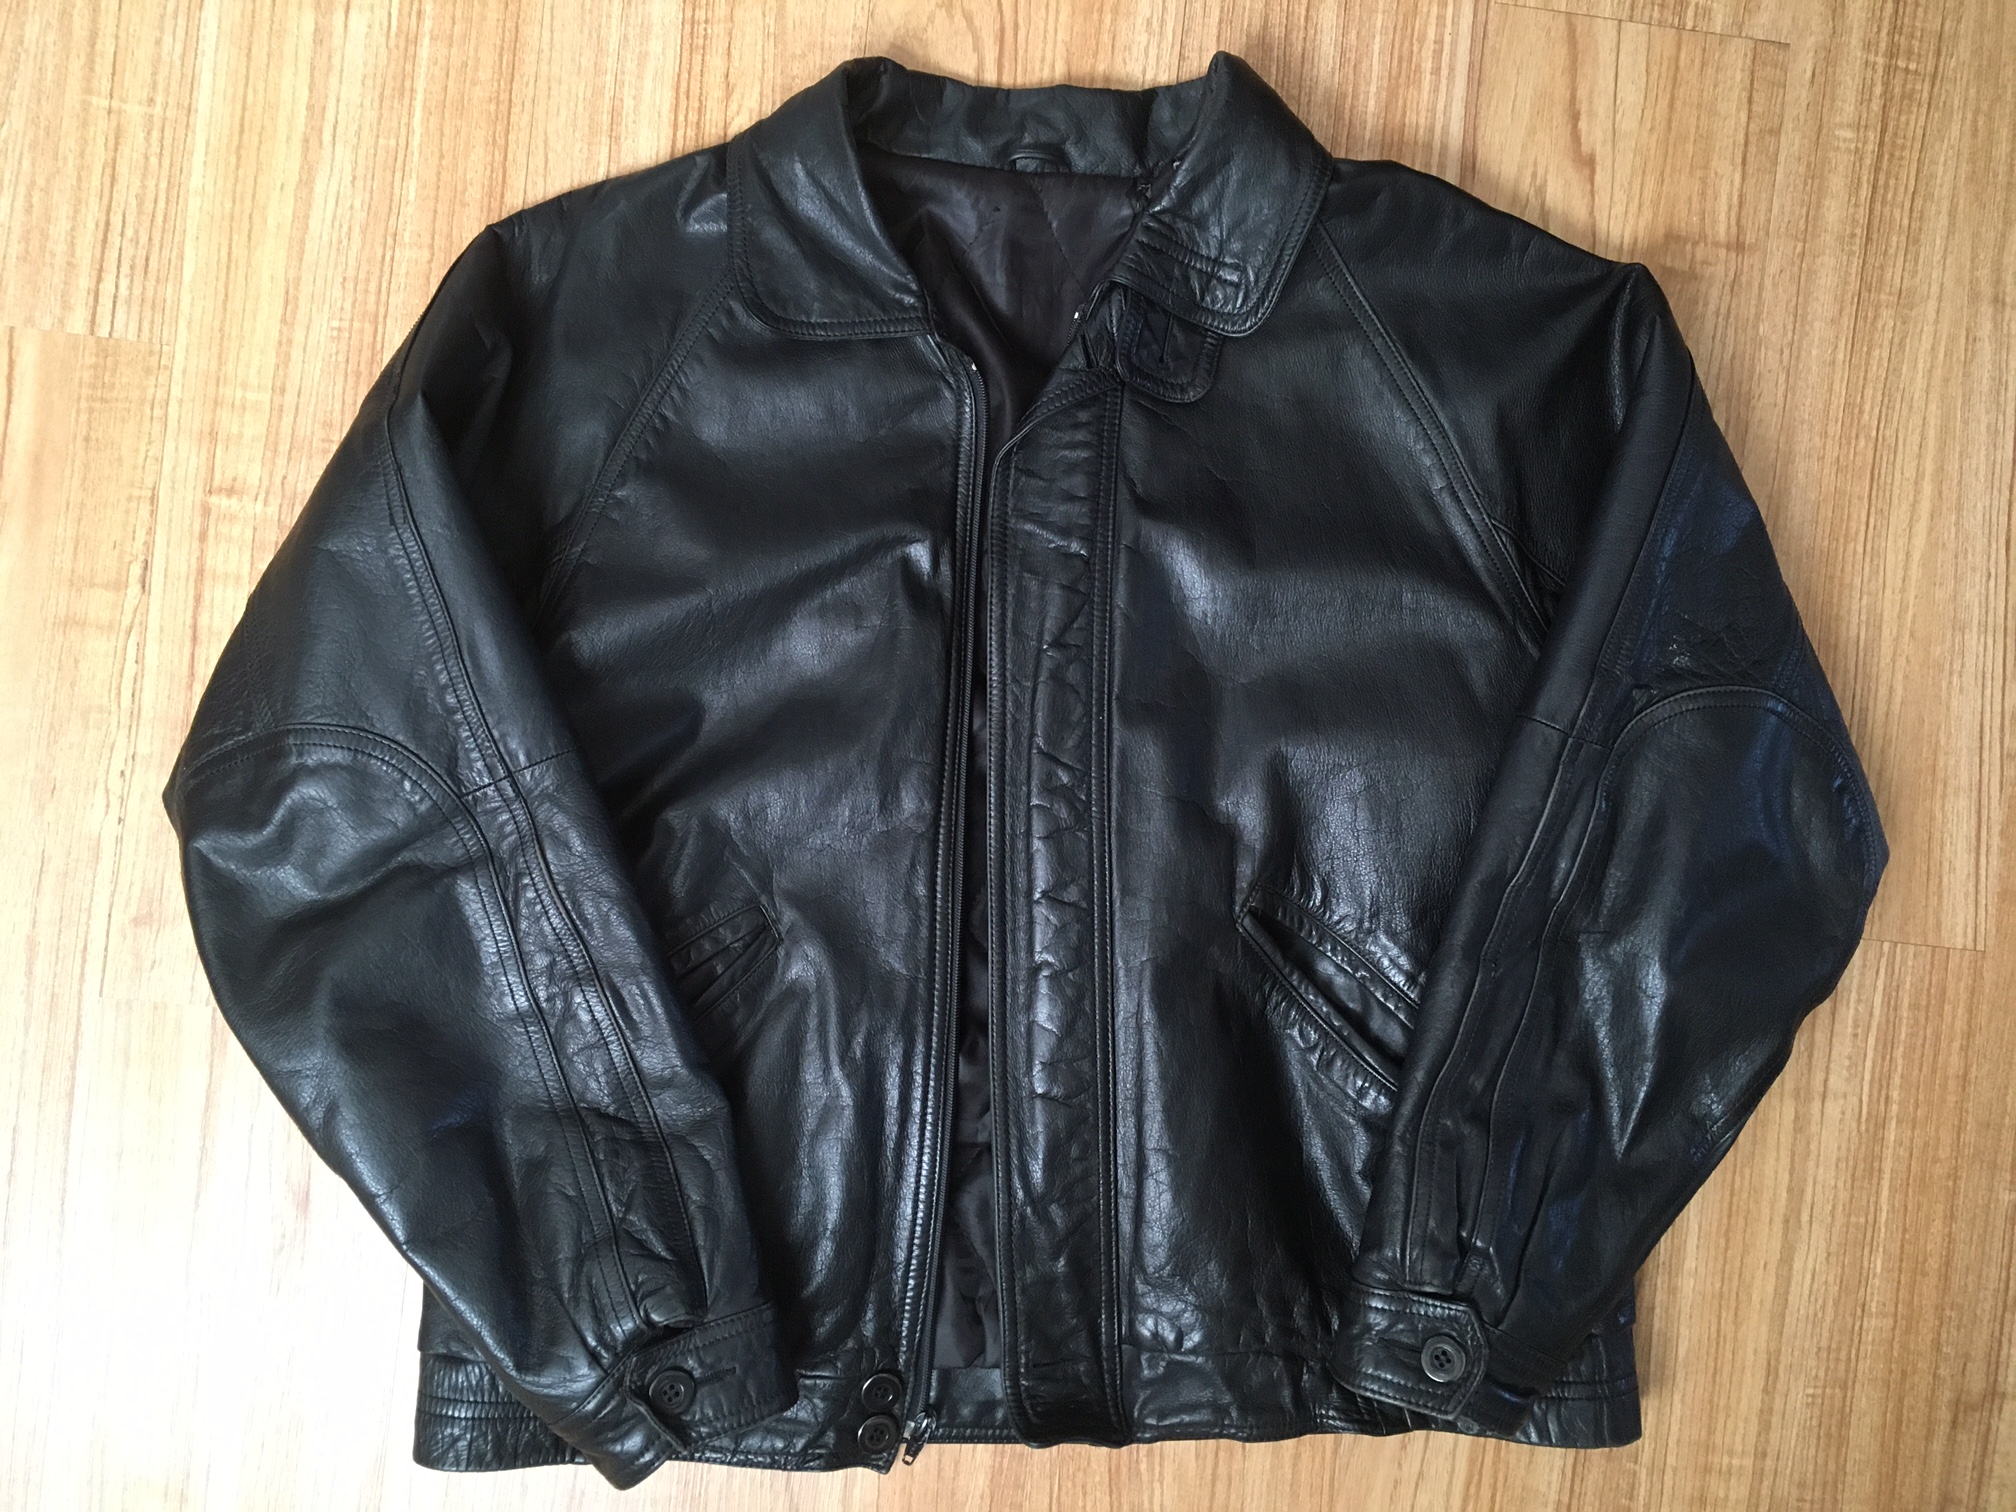 Help identifying leather jacket | The Fedora Lounge